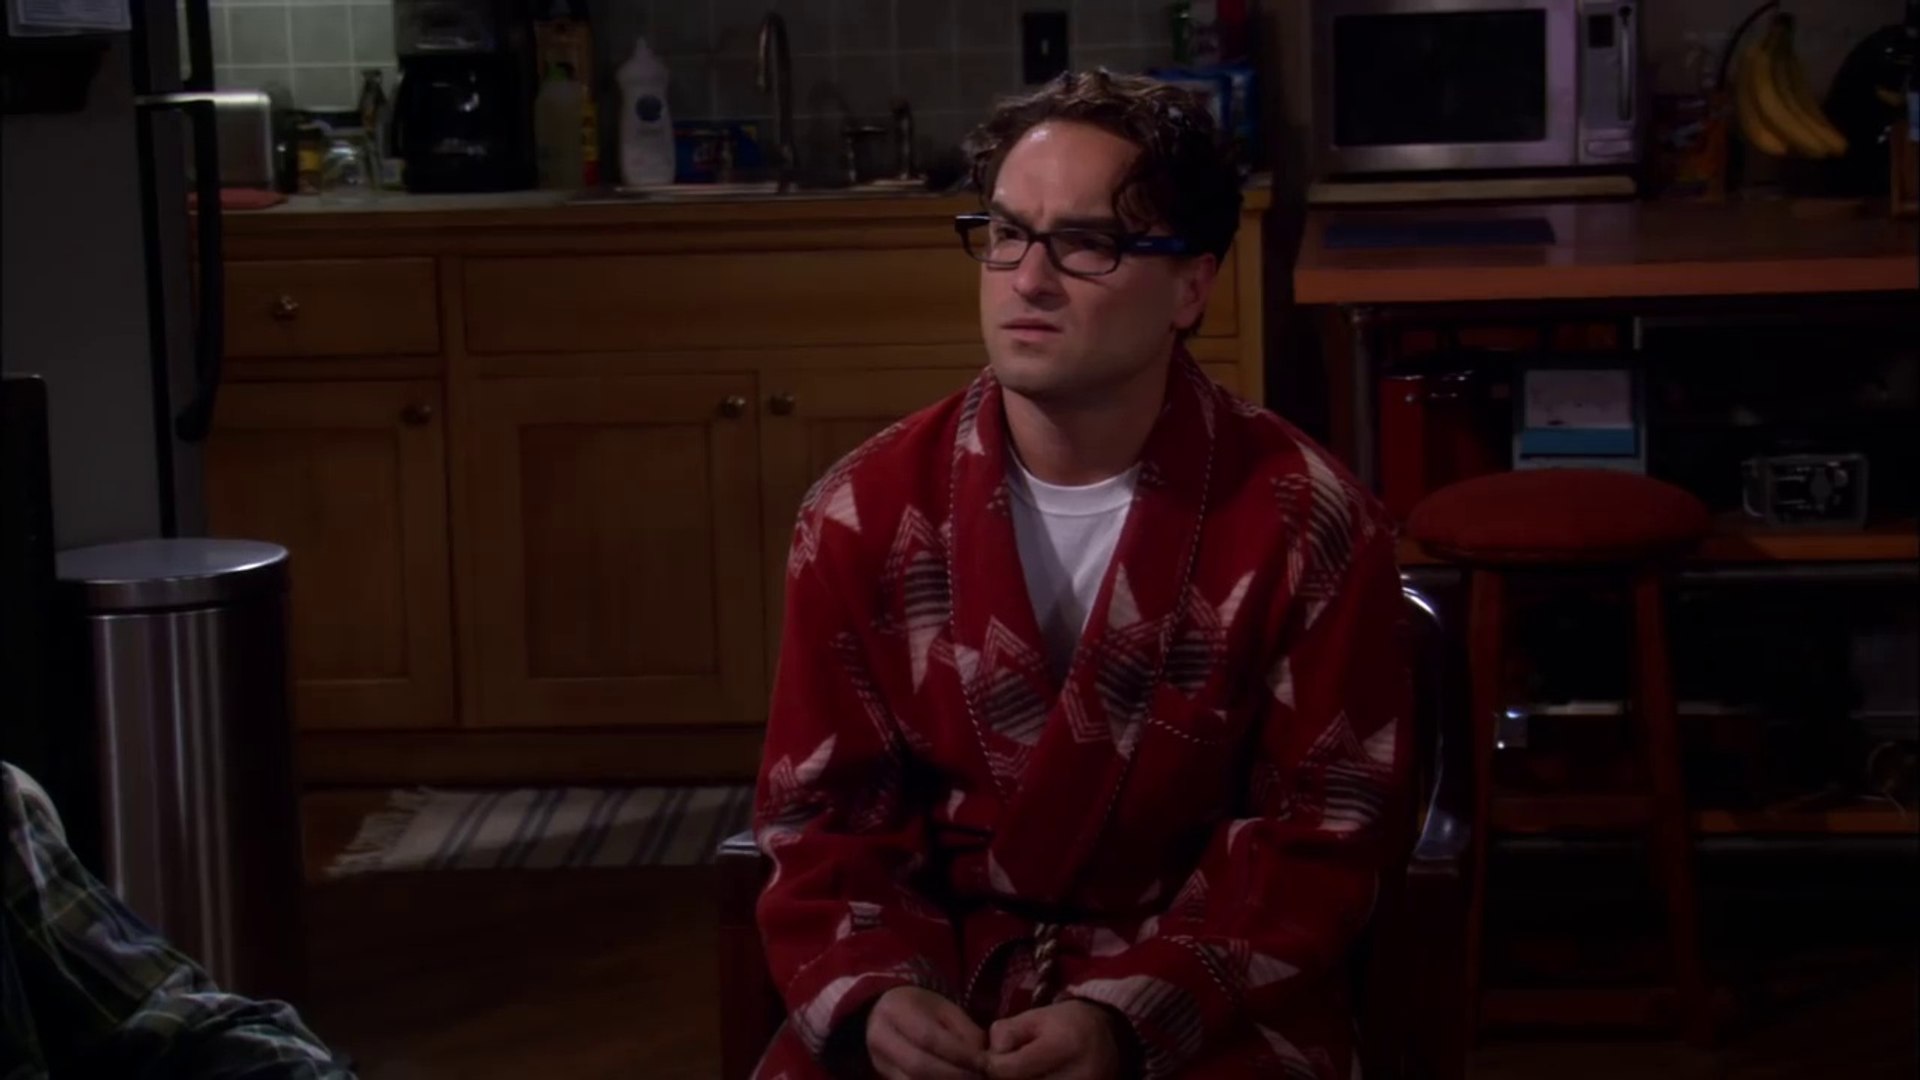 The Big Bang Theory - Sheldon high on valium